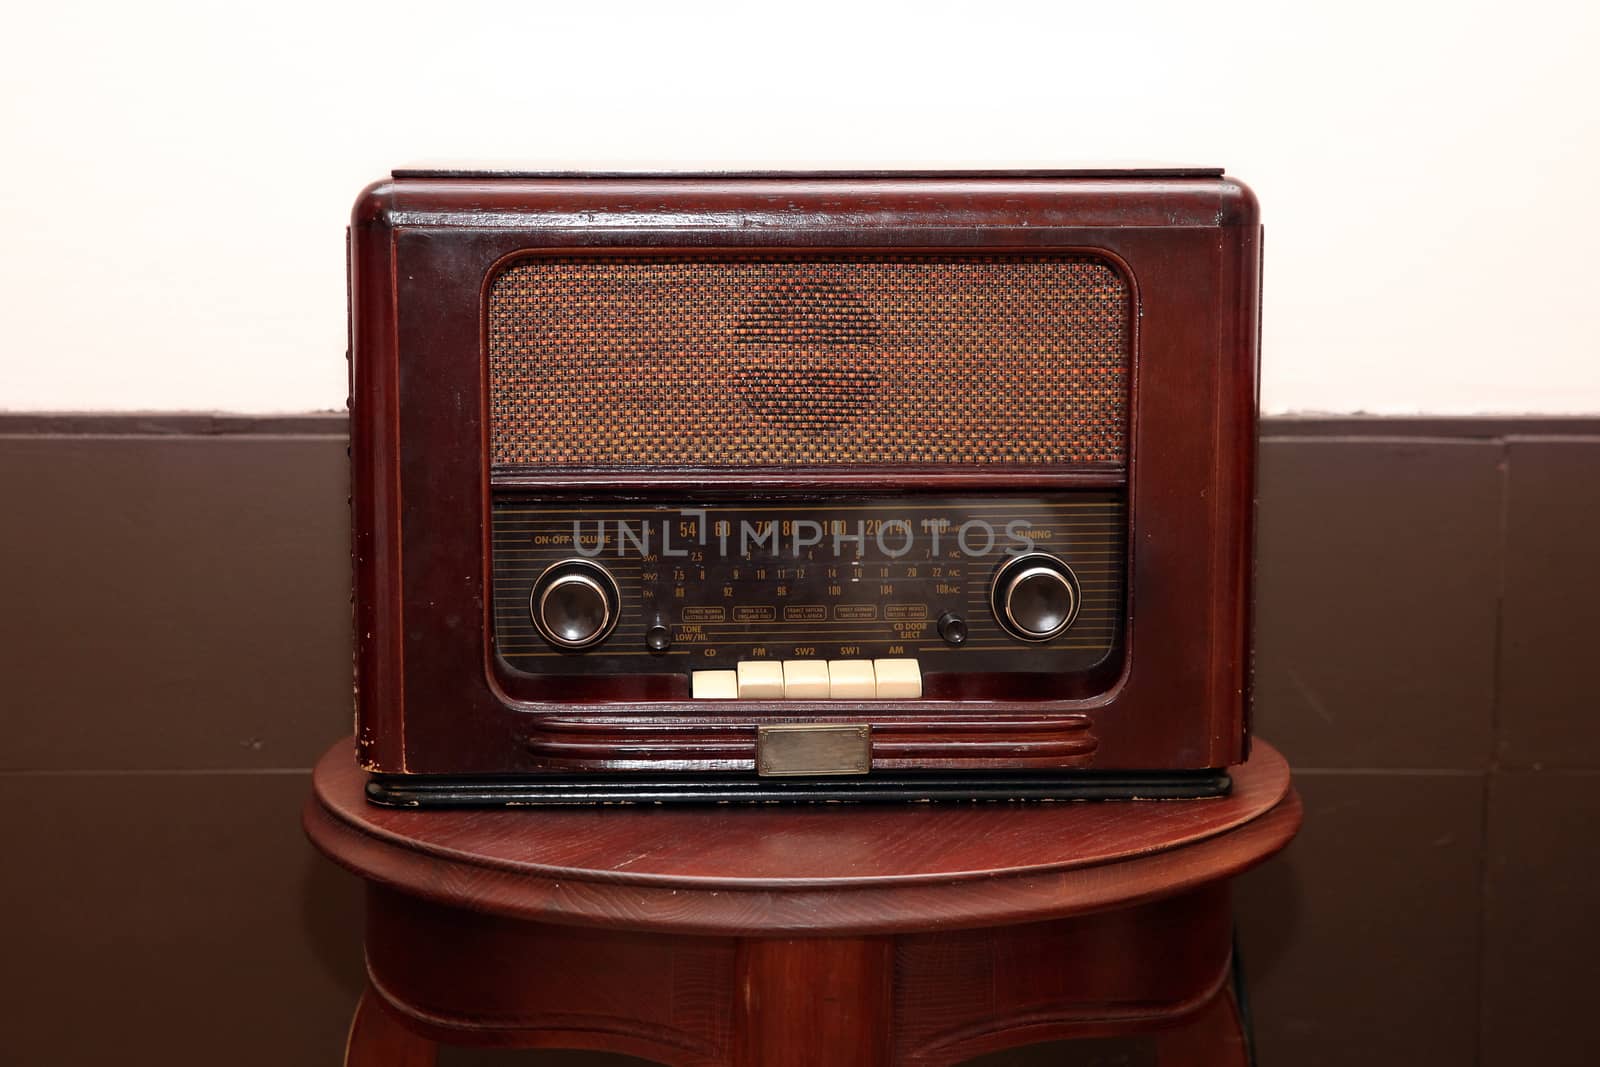 Vintage great radio